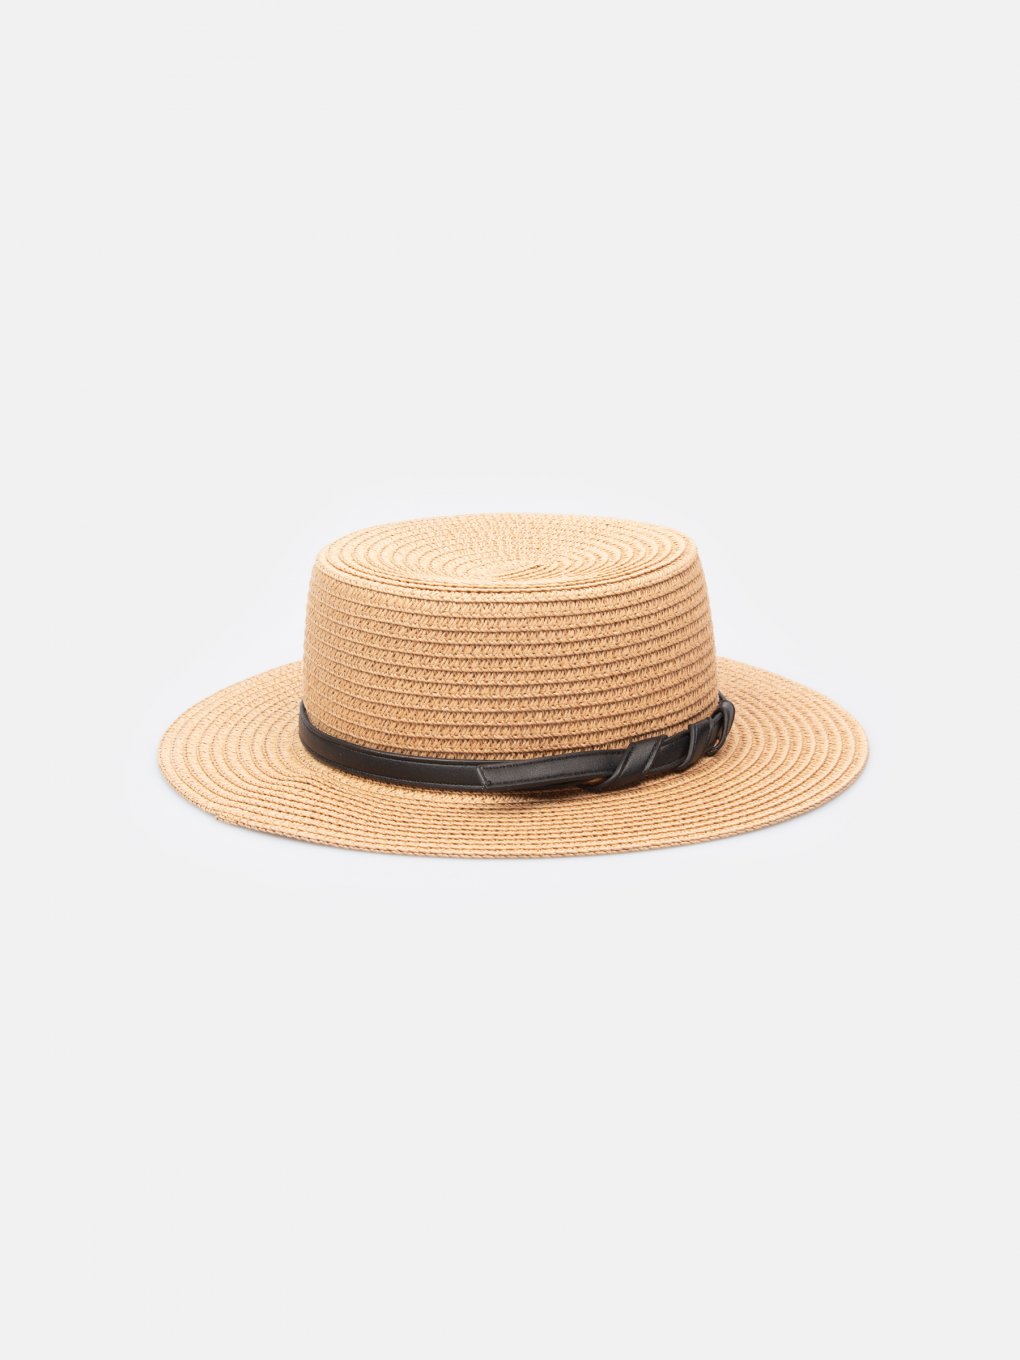 Dámsky slamený klobúk boater